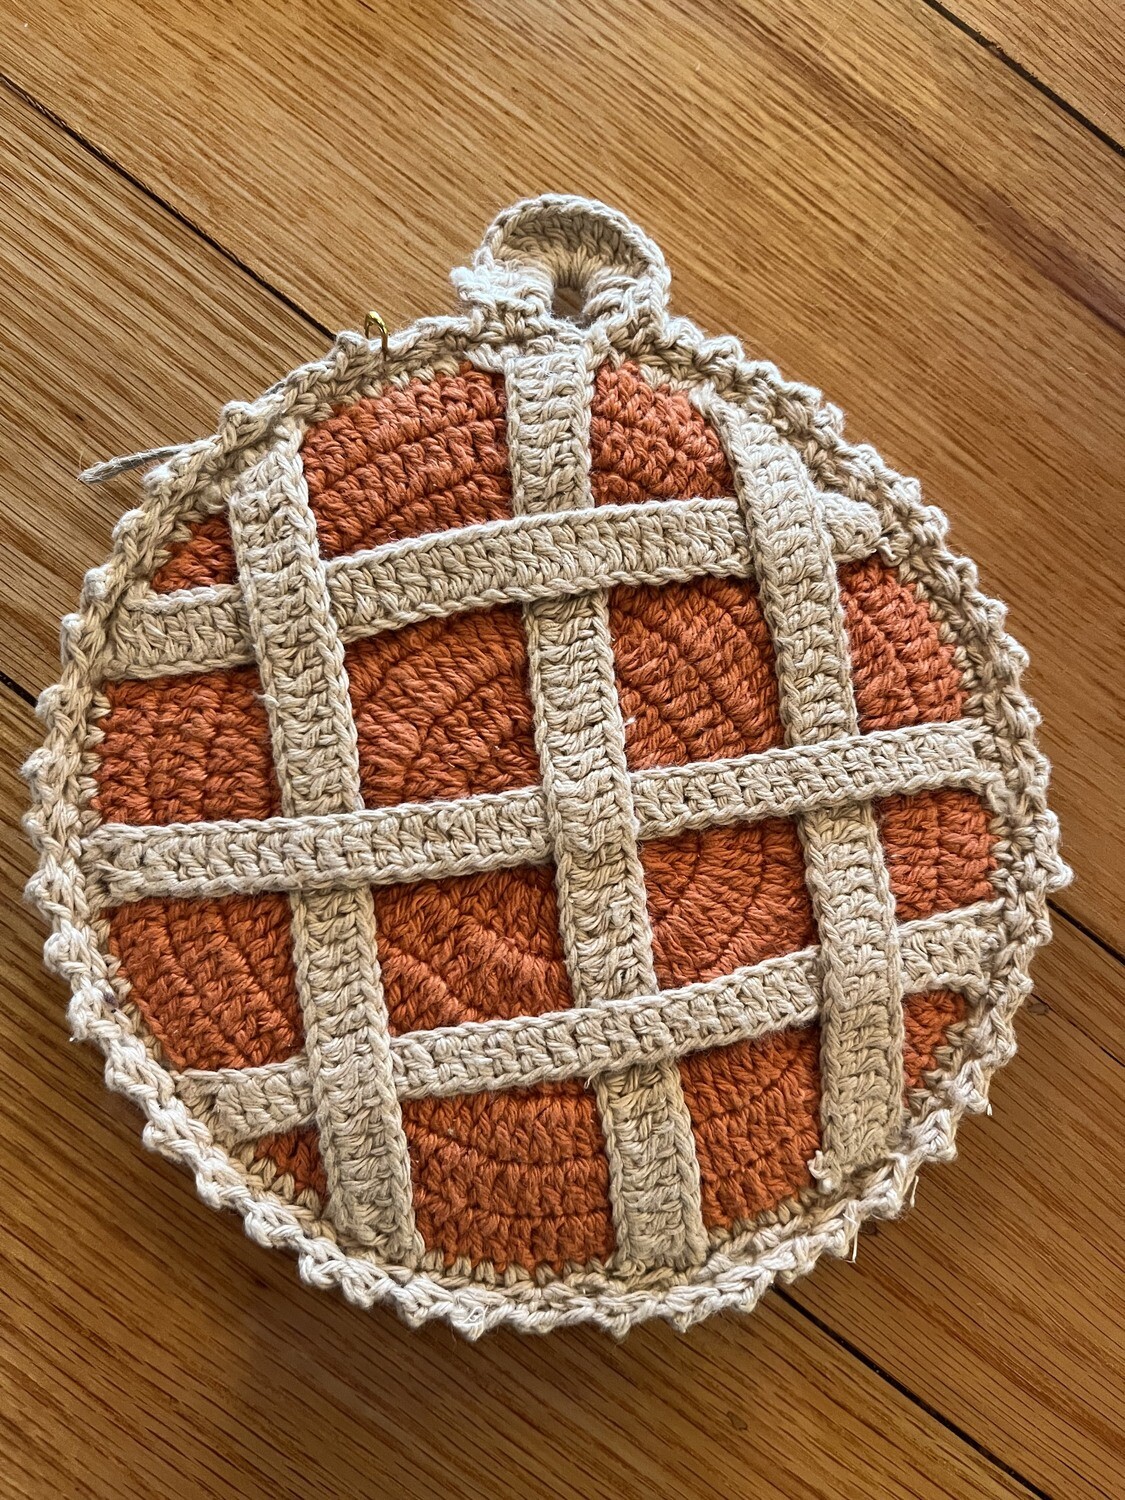 Sweet Crochet Pot Holder